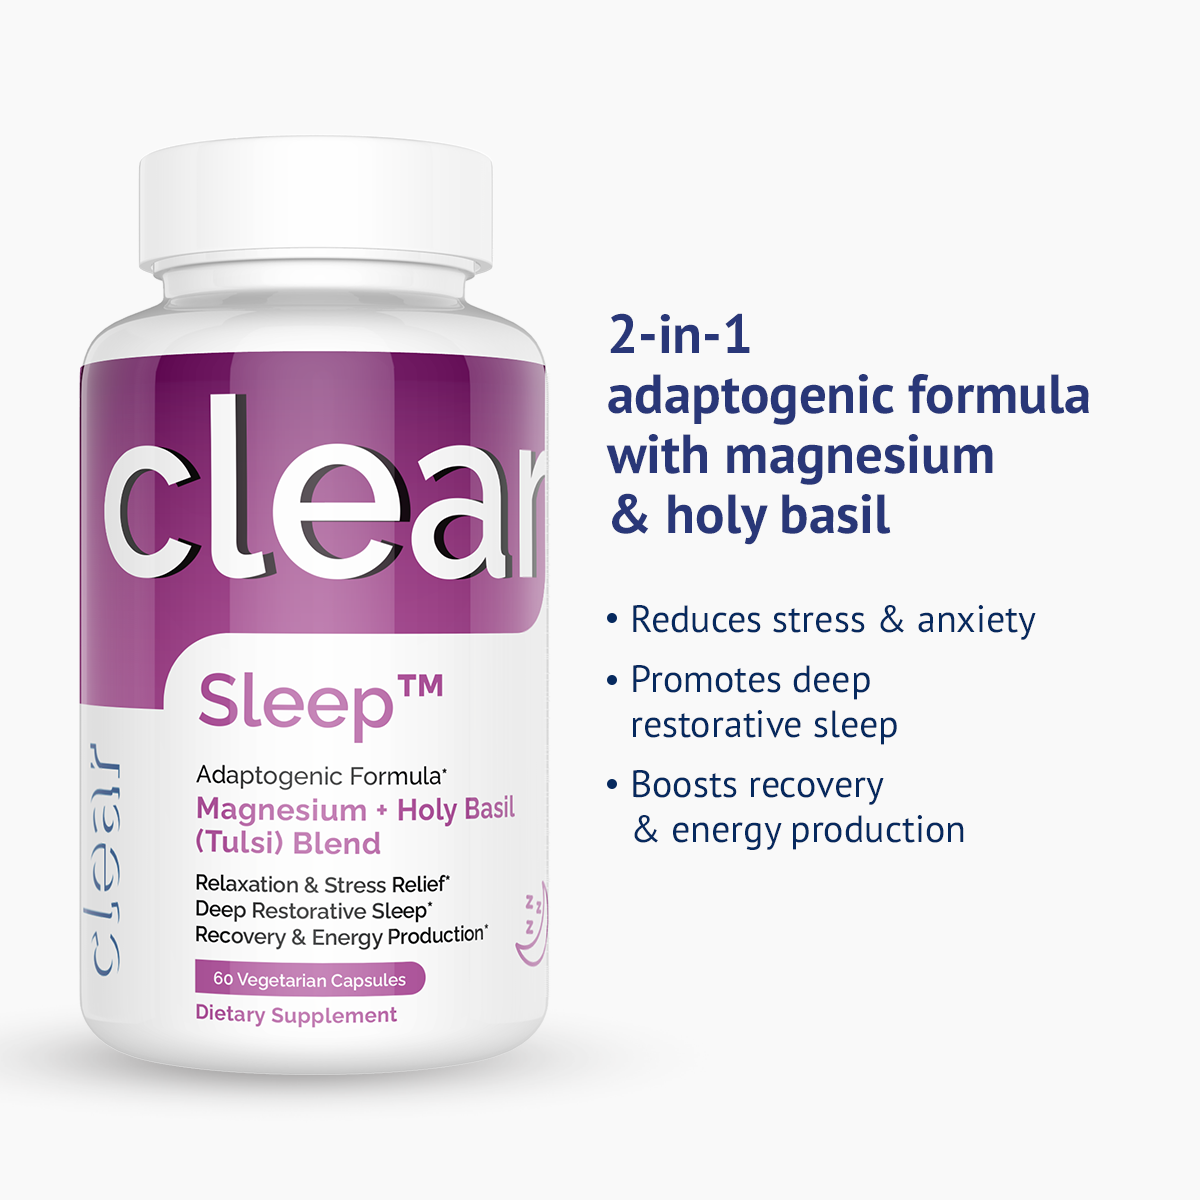 Clear Sleep